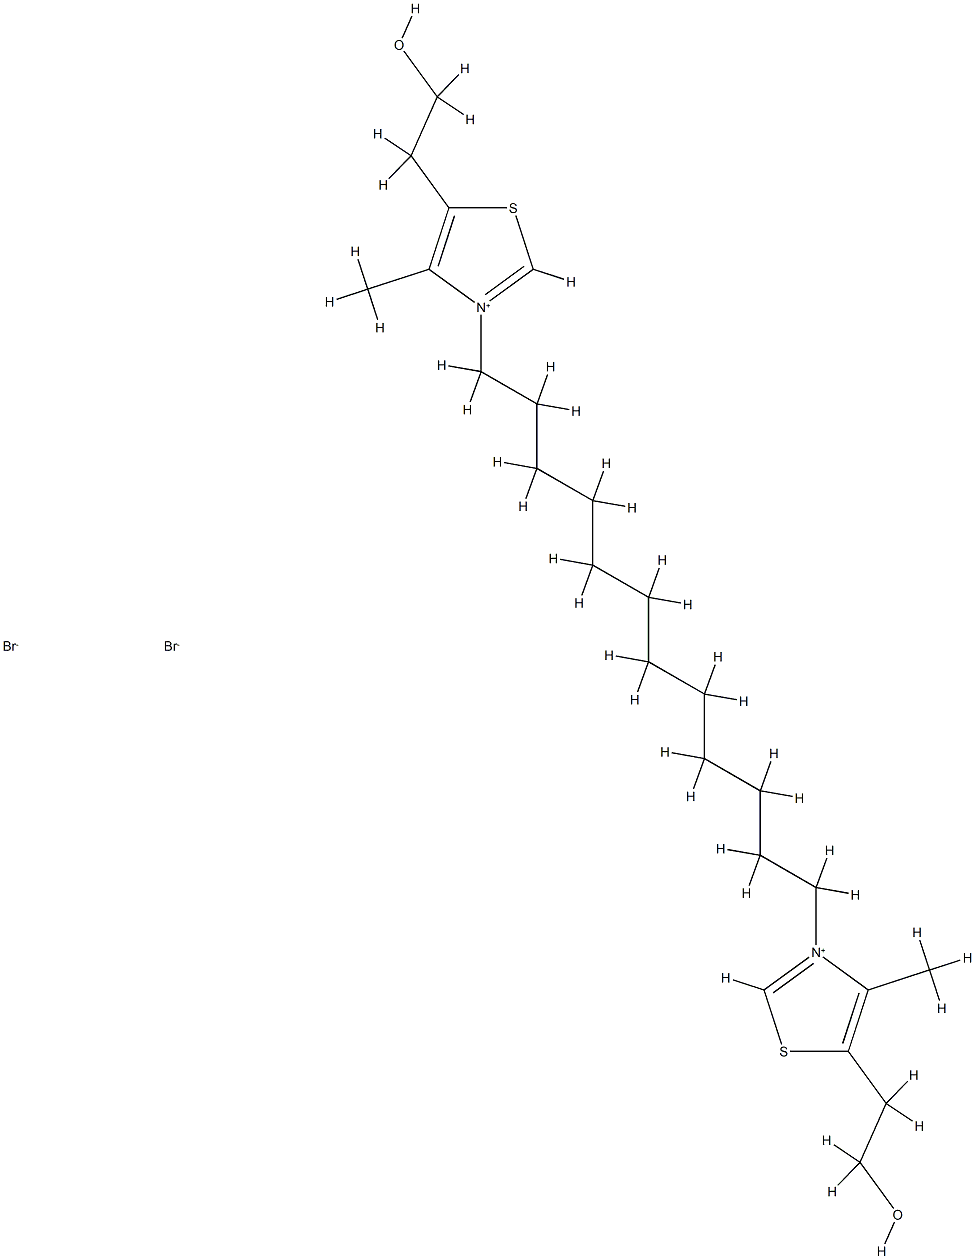 1,12-Bis[4-methyl-5-(2-hydroxyethyl)thiazol-3-ium-3-yl]dodecane dibromide|1,12-双[4-甲基-5-(2-羟基乙基)噻唑-3-基]十二烷二溴化物